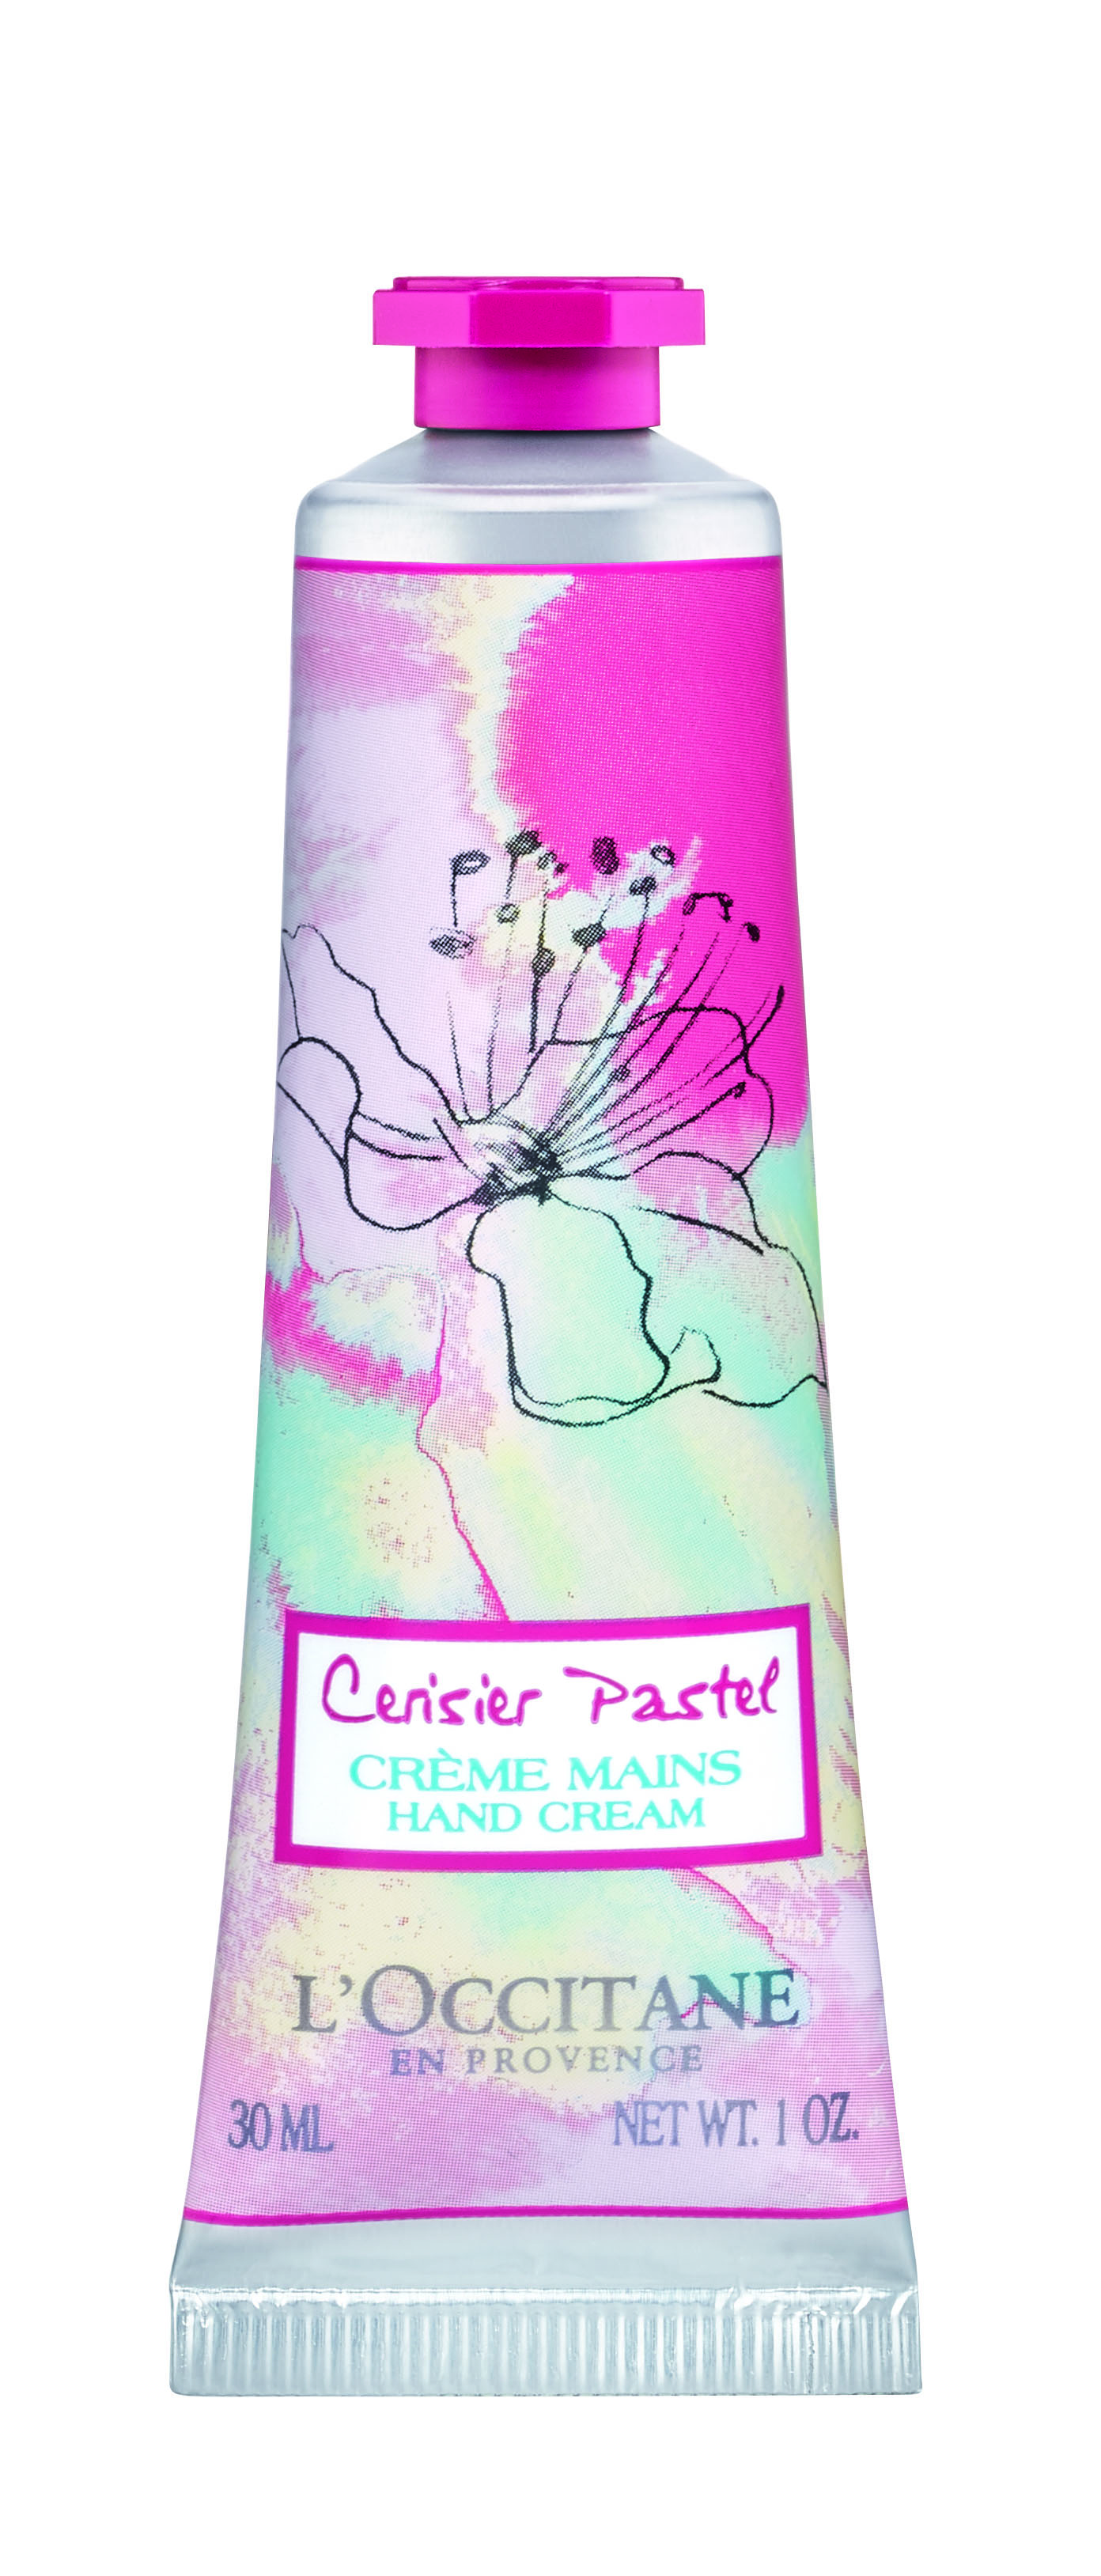 Prodotti per la cura del corpo, la limited edition Cerisier Pastel de L&#8217;Occitane